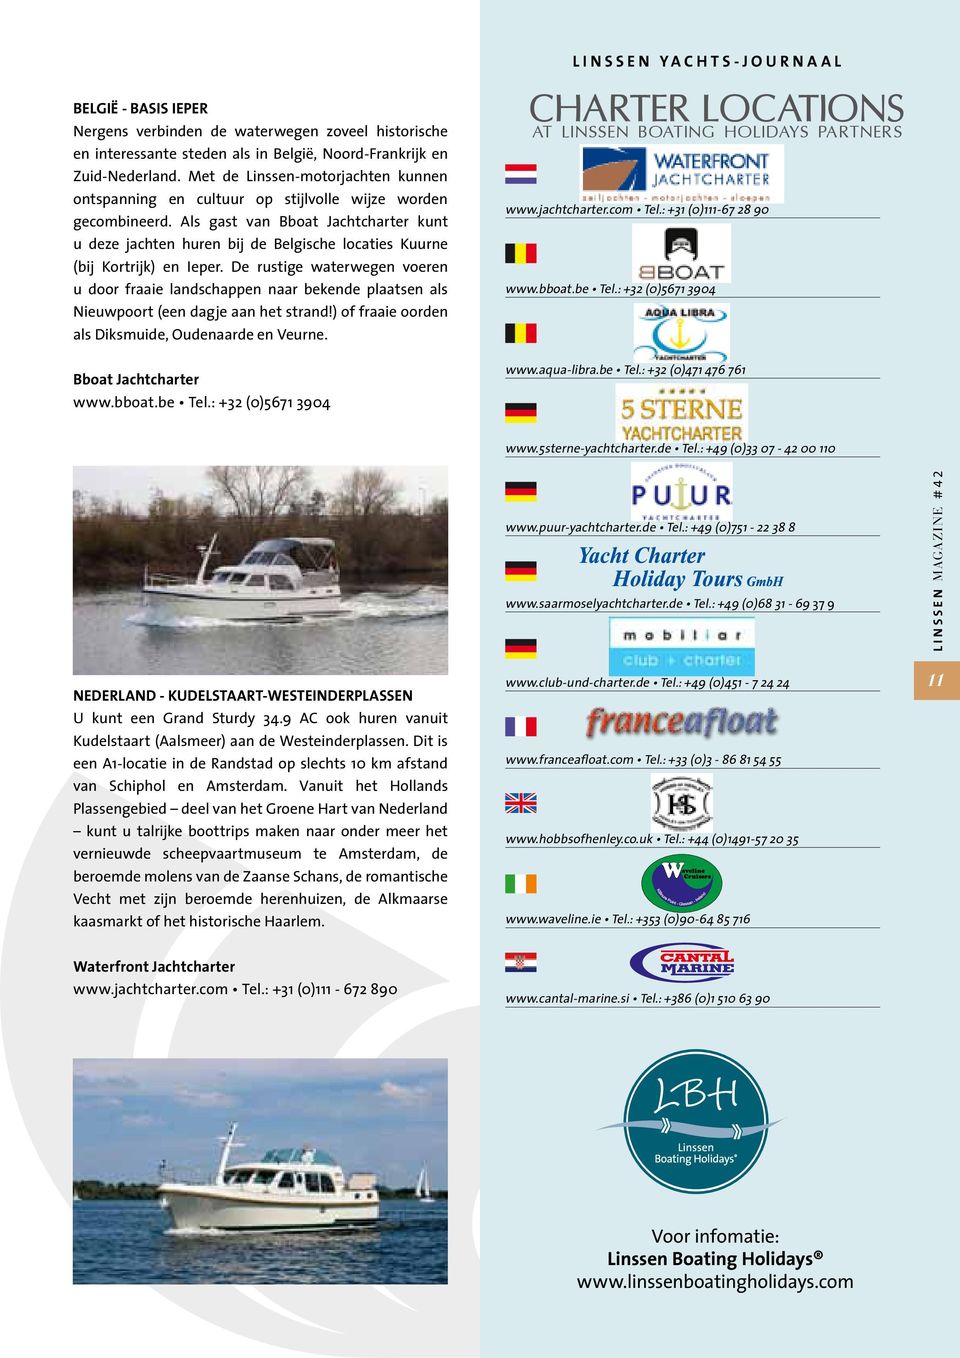 Als gast van Bboat Jachtcharter kunt u deze jachten huren bij de Belgische locaties Kuurne (bij Kortrijk) en Ieper.